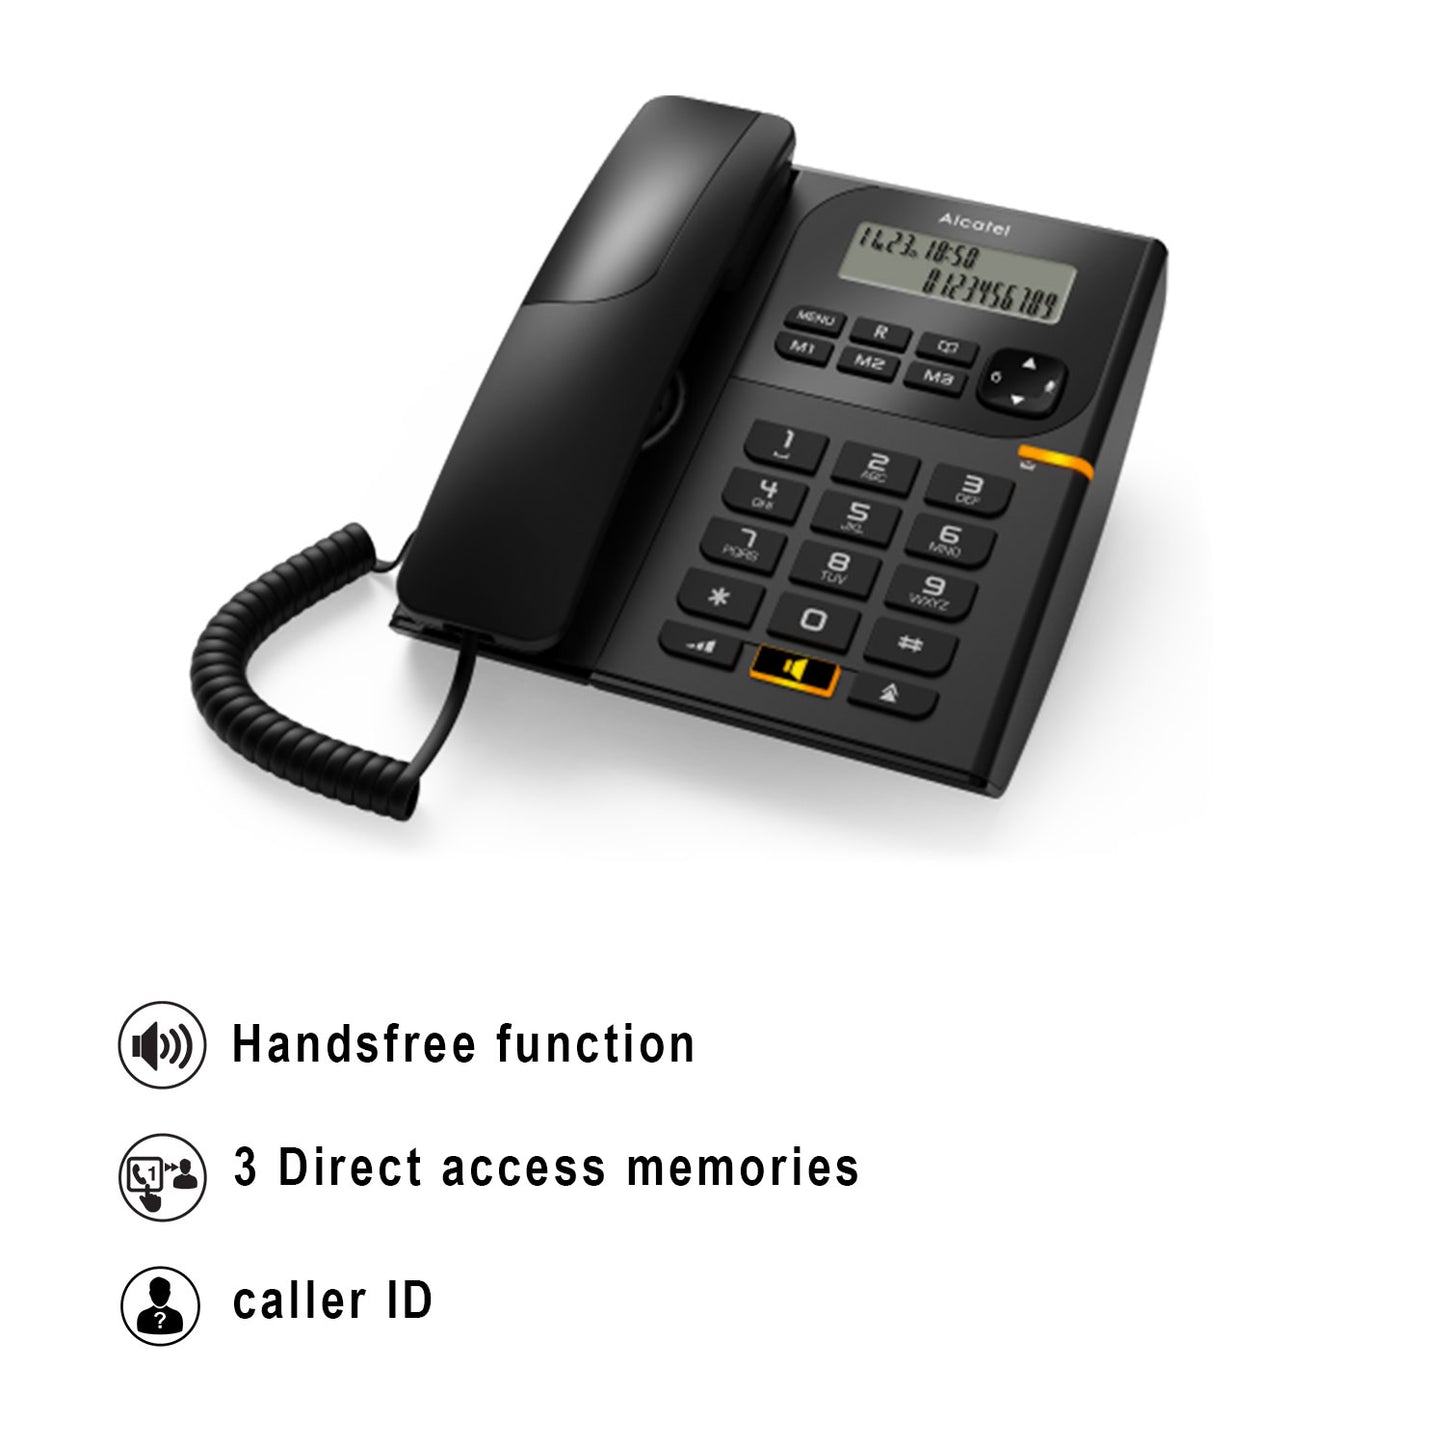 Alcatel T58 Corded Landline Phone With Display & Speaker Black (Pack Of 2)